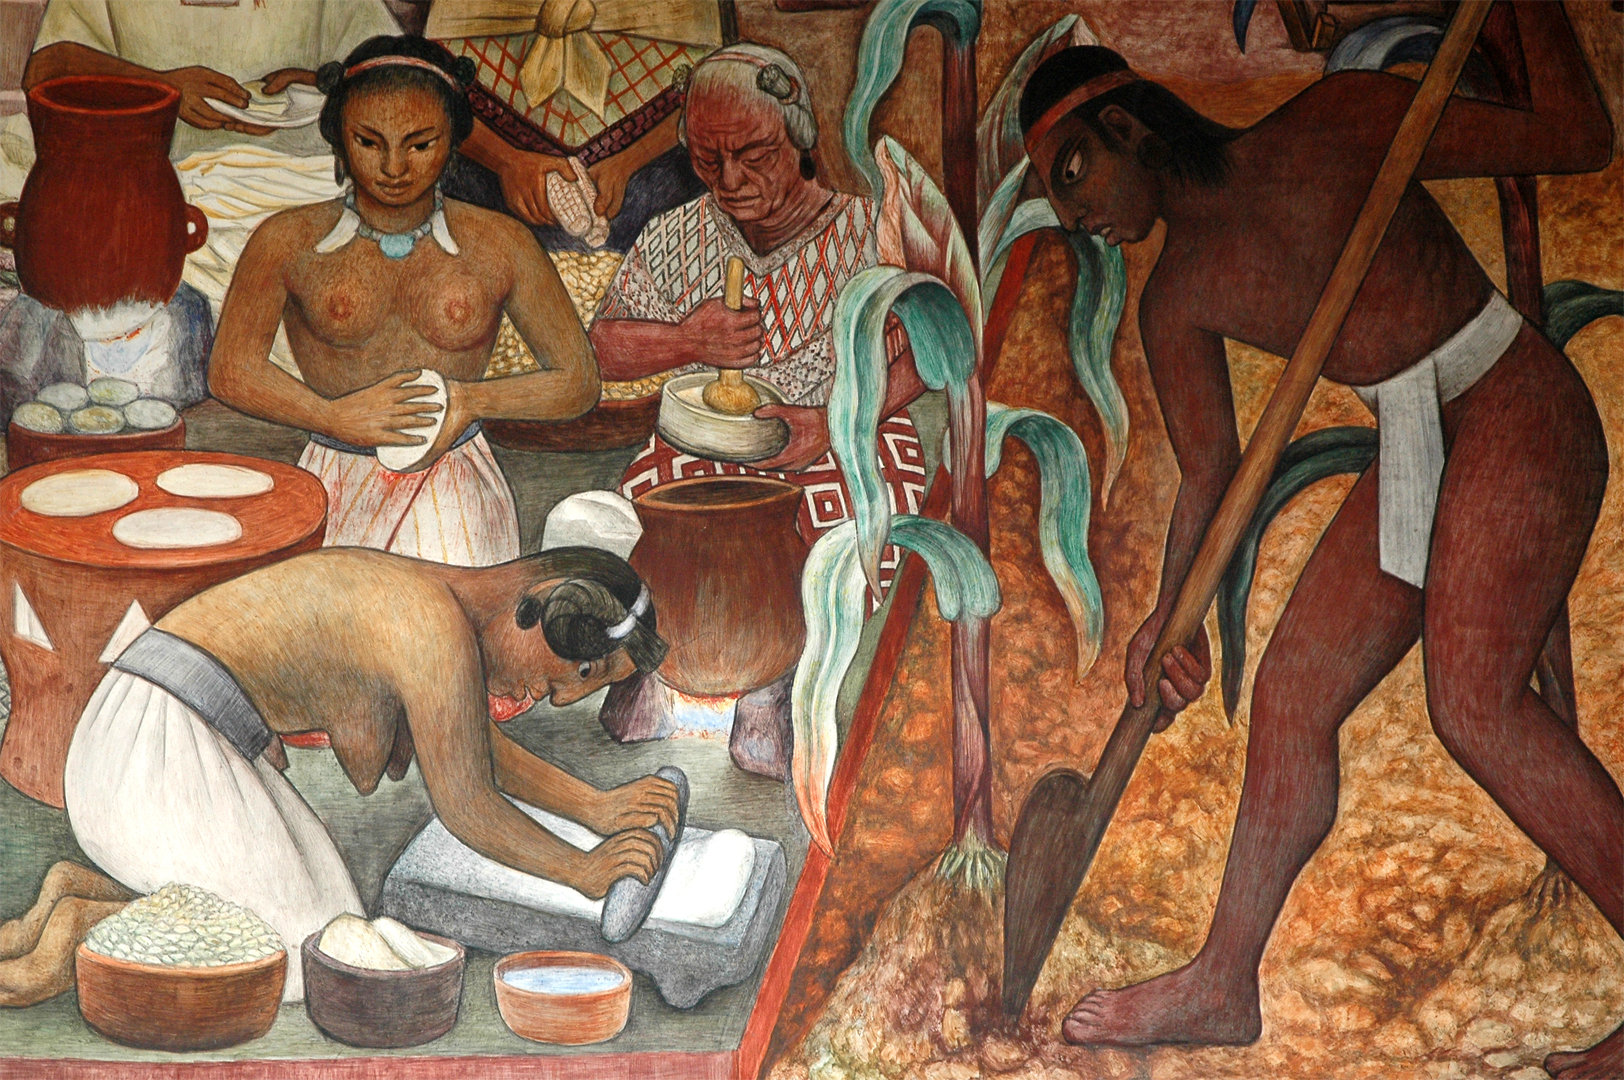 Diego Rivera, “Cultura huasteca” (particolare), murale, 1950, Palacio Nacional, Città del Messico, Messico.